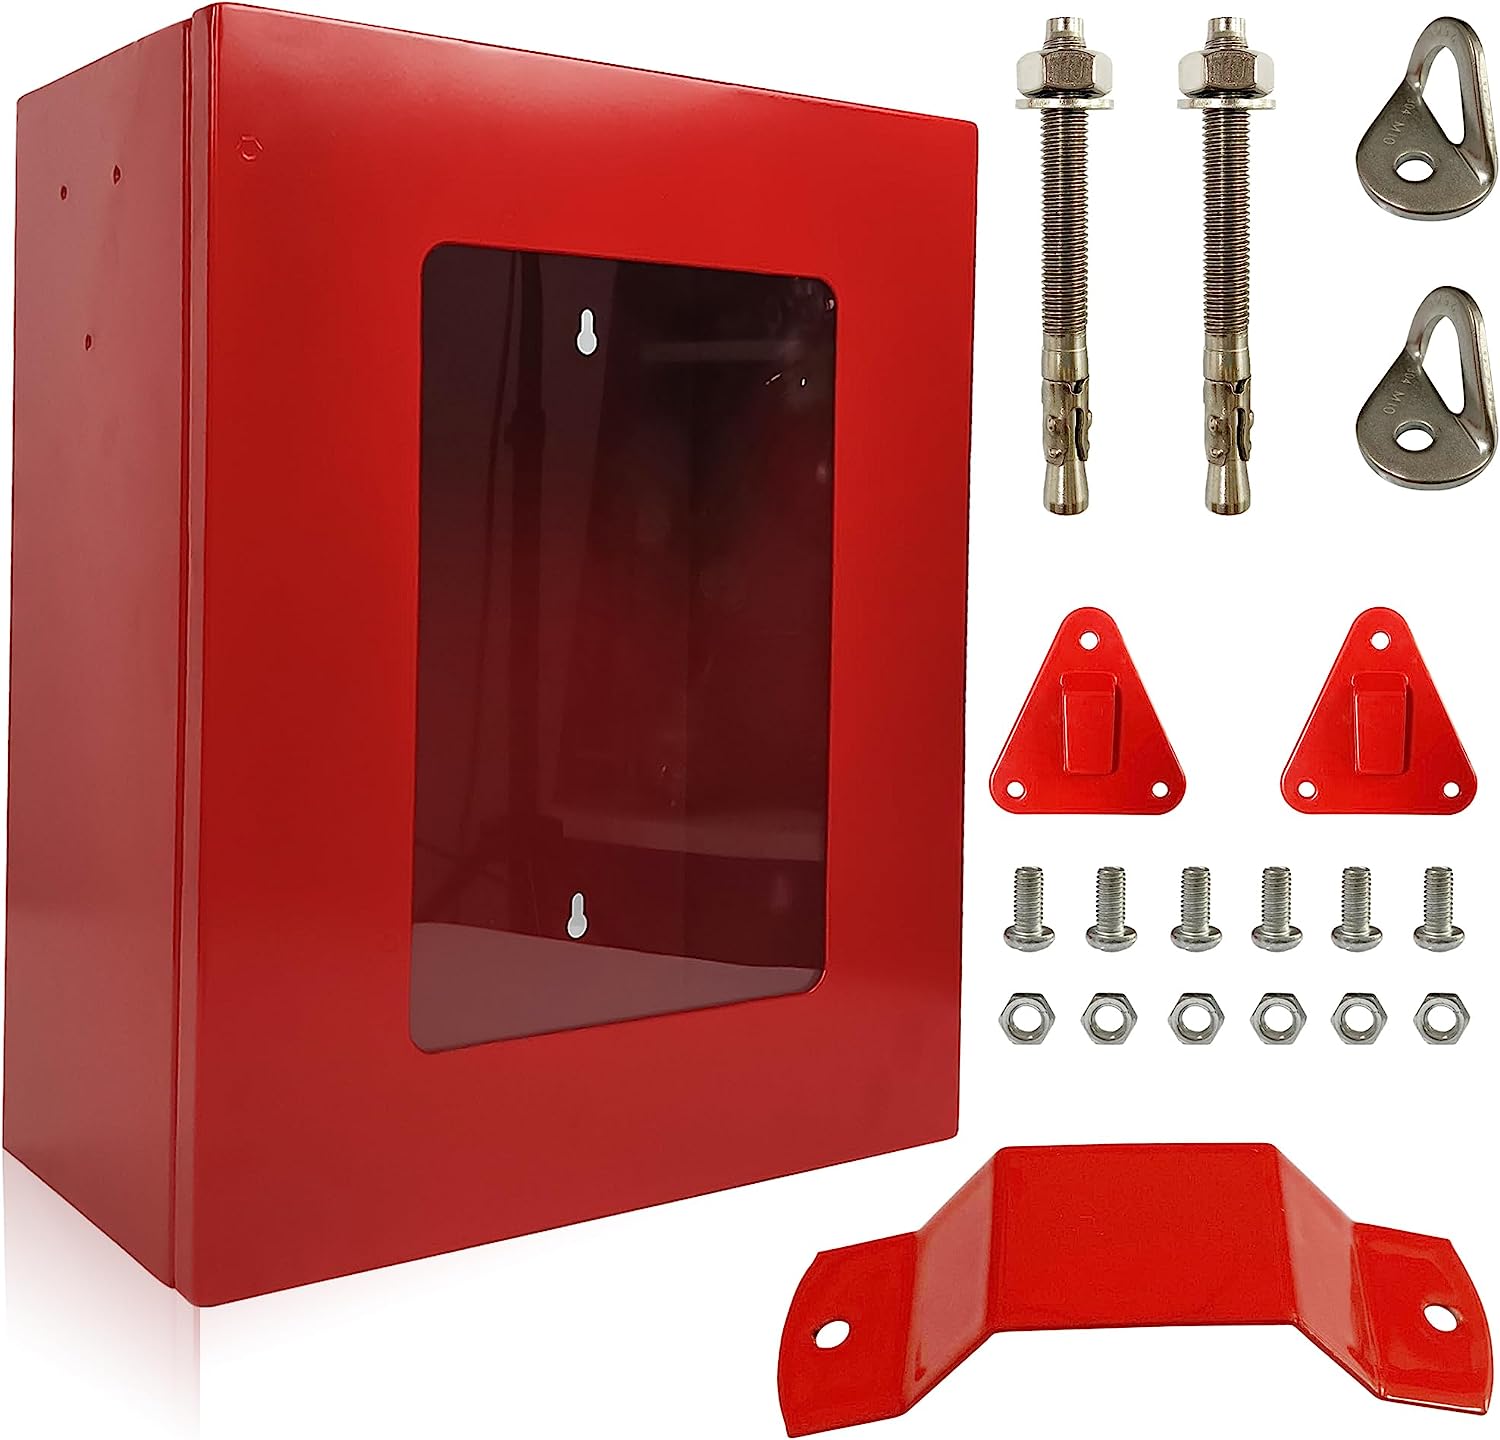 Red Box for Fire Rescue Stuff (Size S) | AED Defibrillator 1